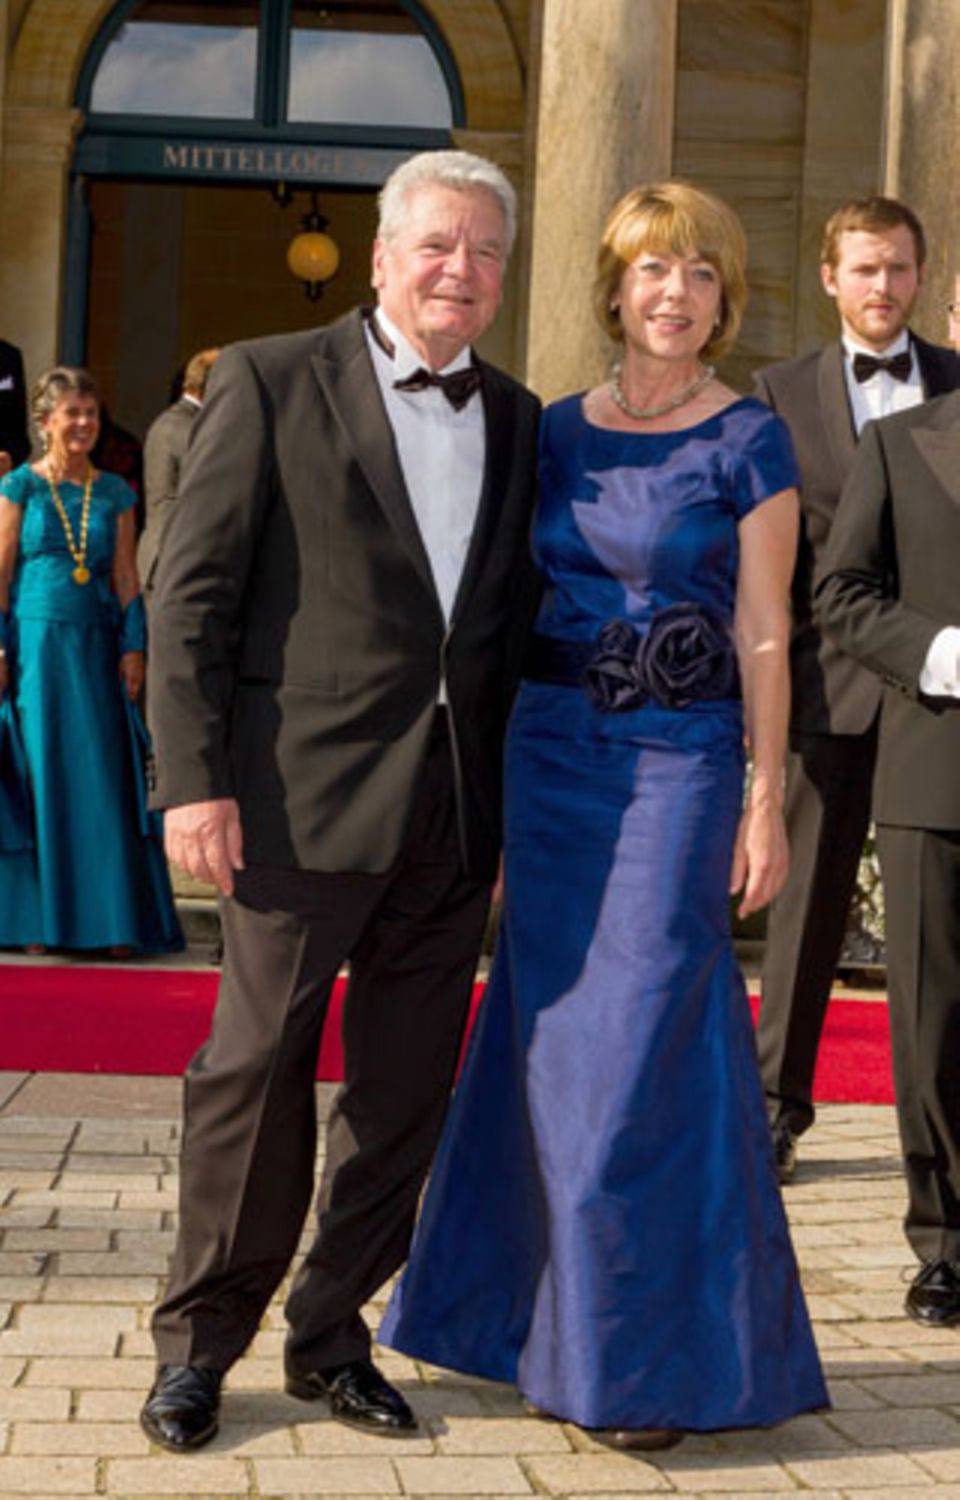 Joachim Gauck und Daniela Schadt